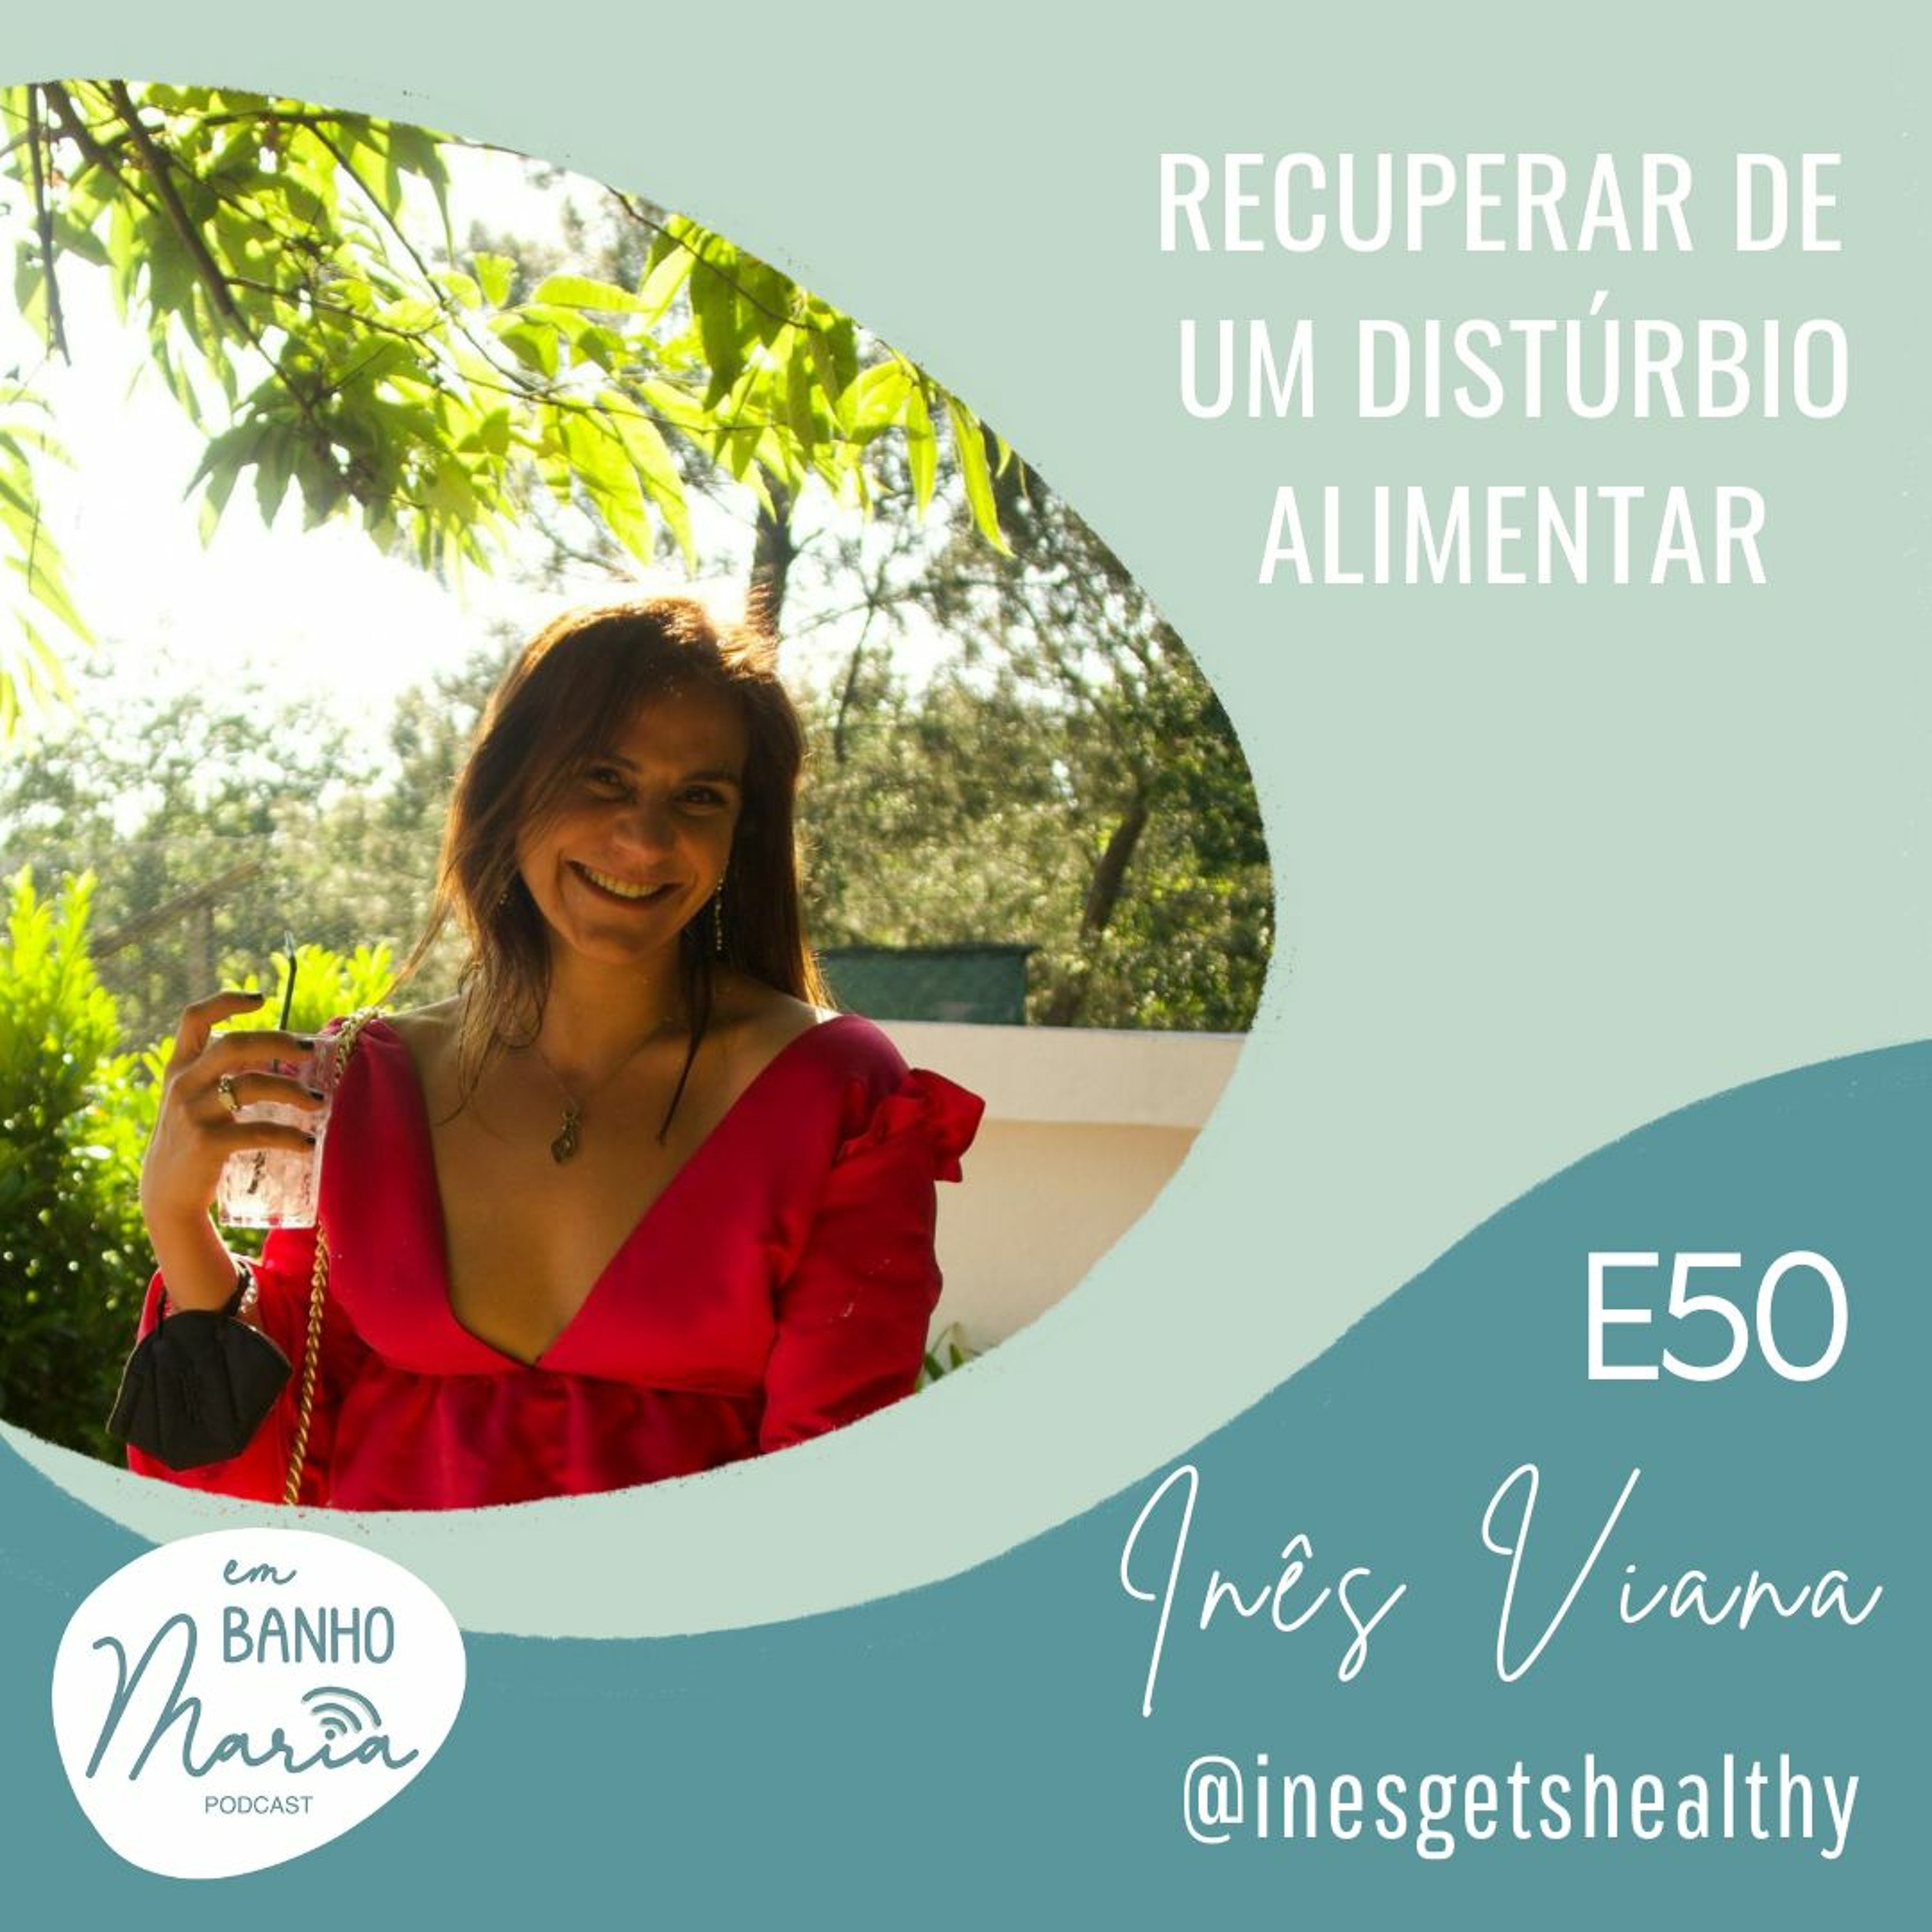 E50: Recuperar de um distúrbio alimentar, com Inês Viana